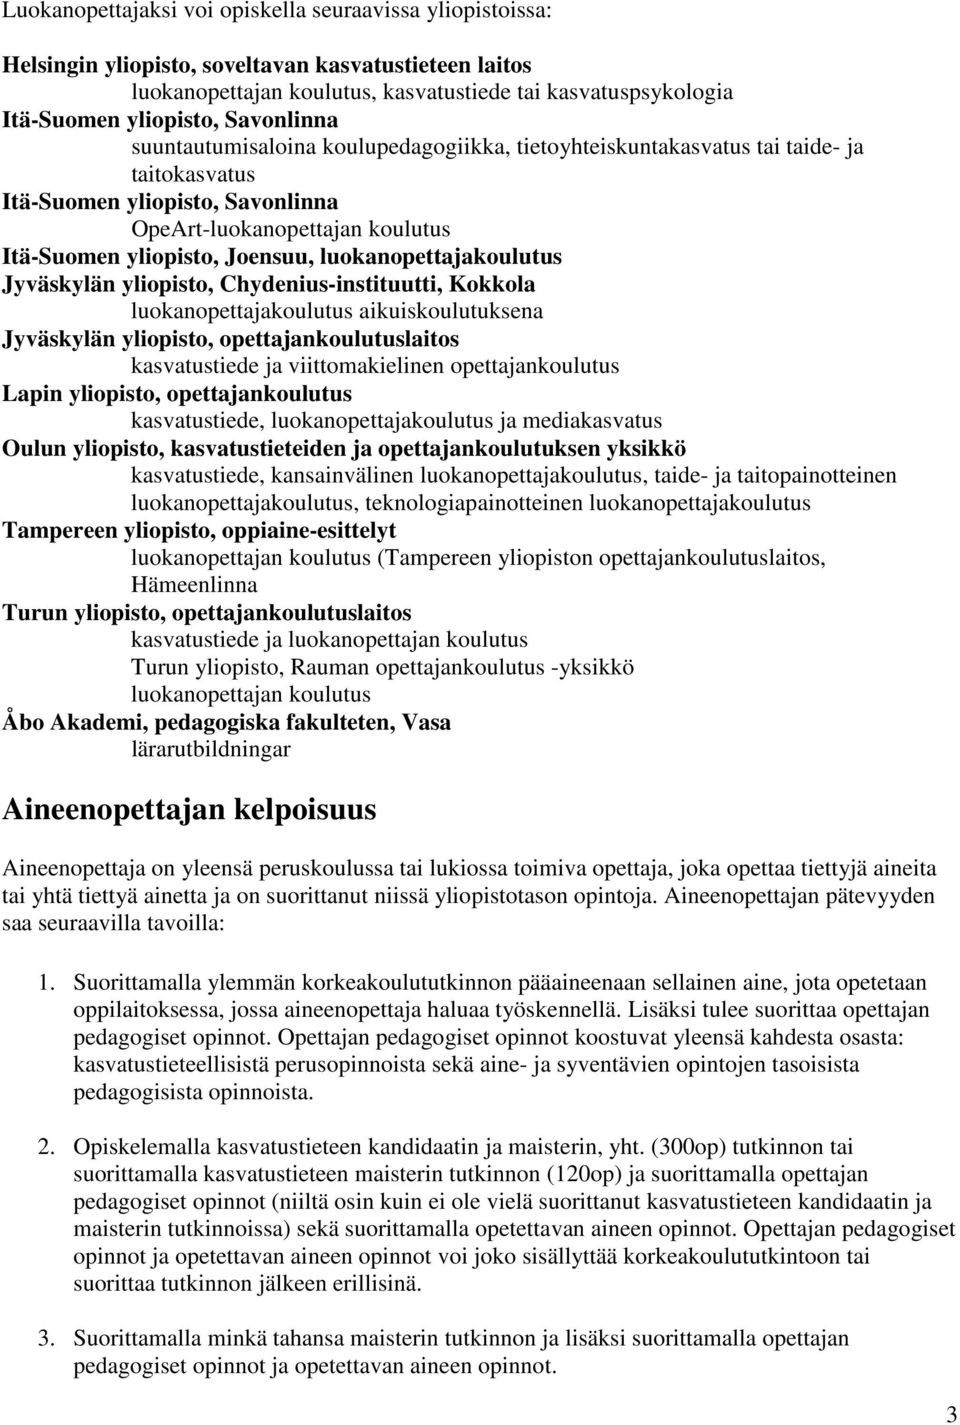 luokanopettajakoulutus Jyväskylän yliopisto, Chydenius-instituutti, Kokkola luokanopettajakoulutus aikuiskoulutuksena Jyväskylän yliopisto, opettajankoulutuslaitos kasvatustiede ja viittomakielinen